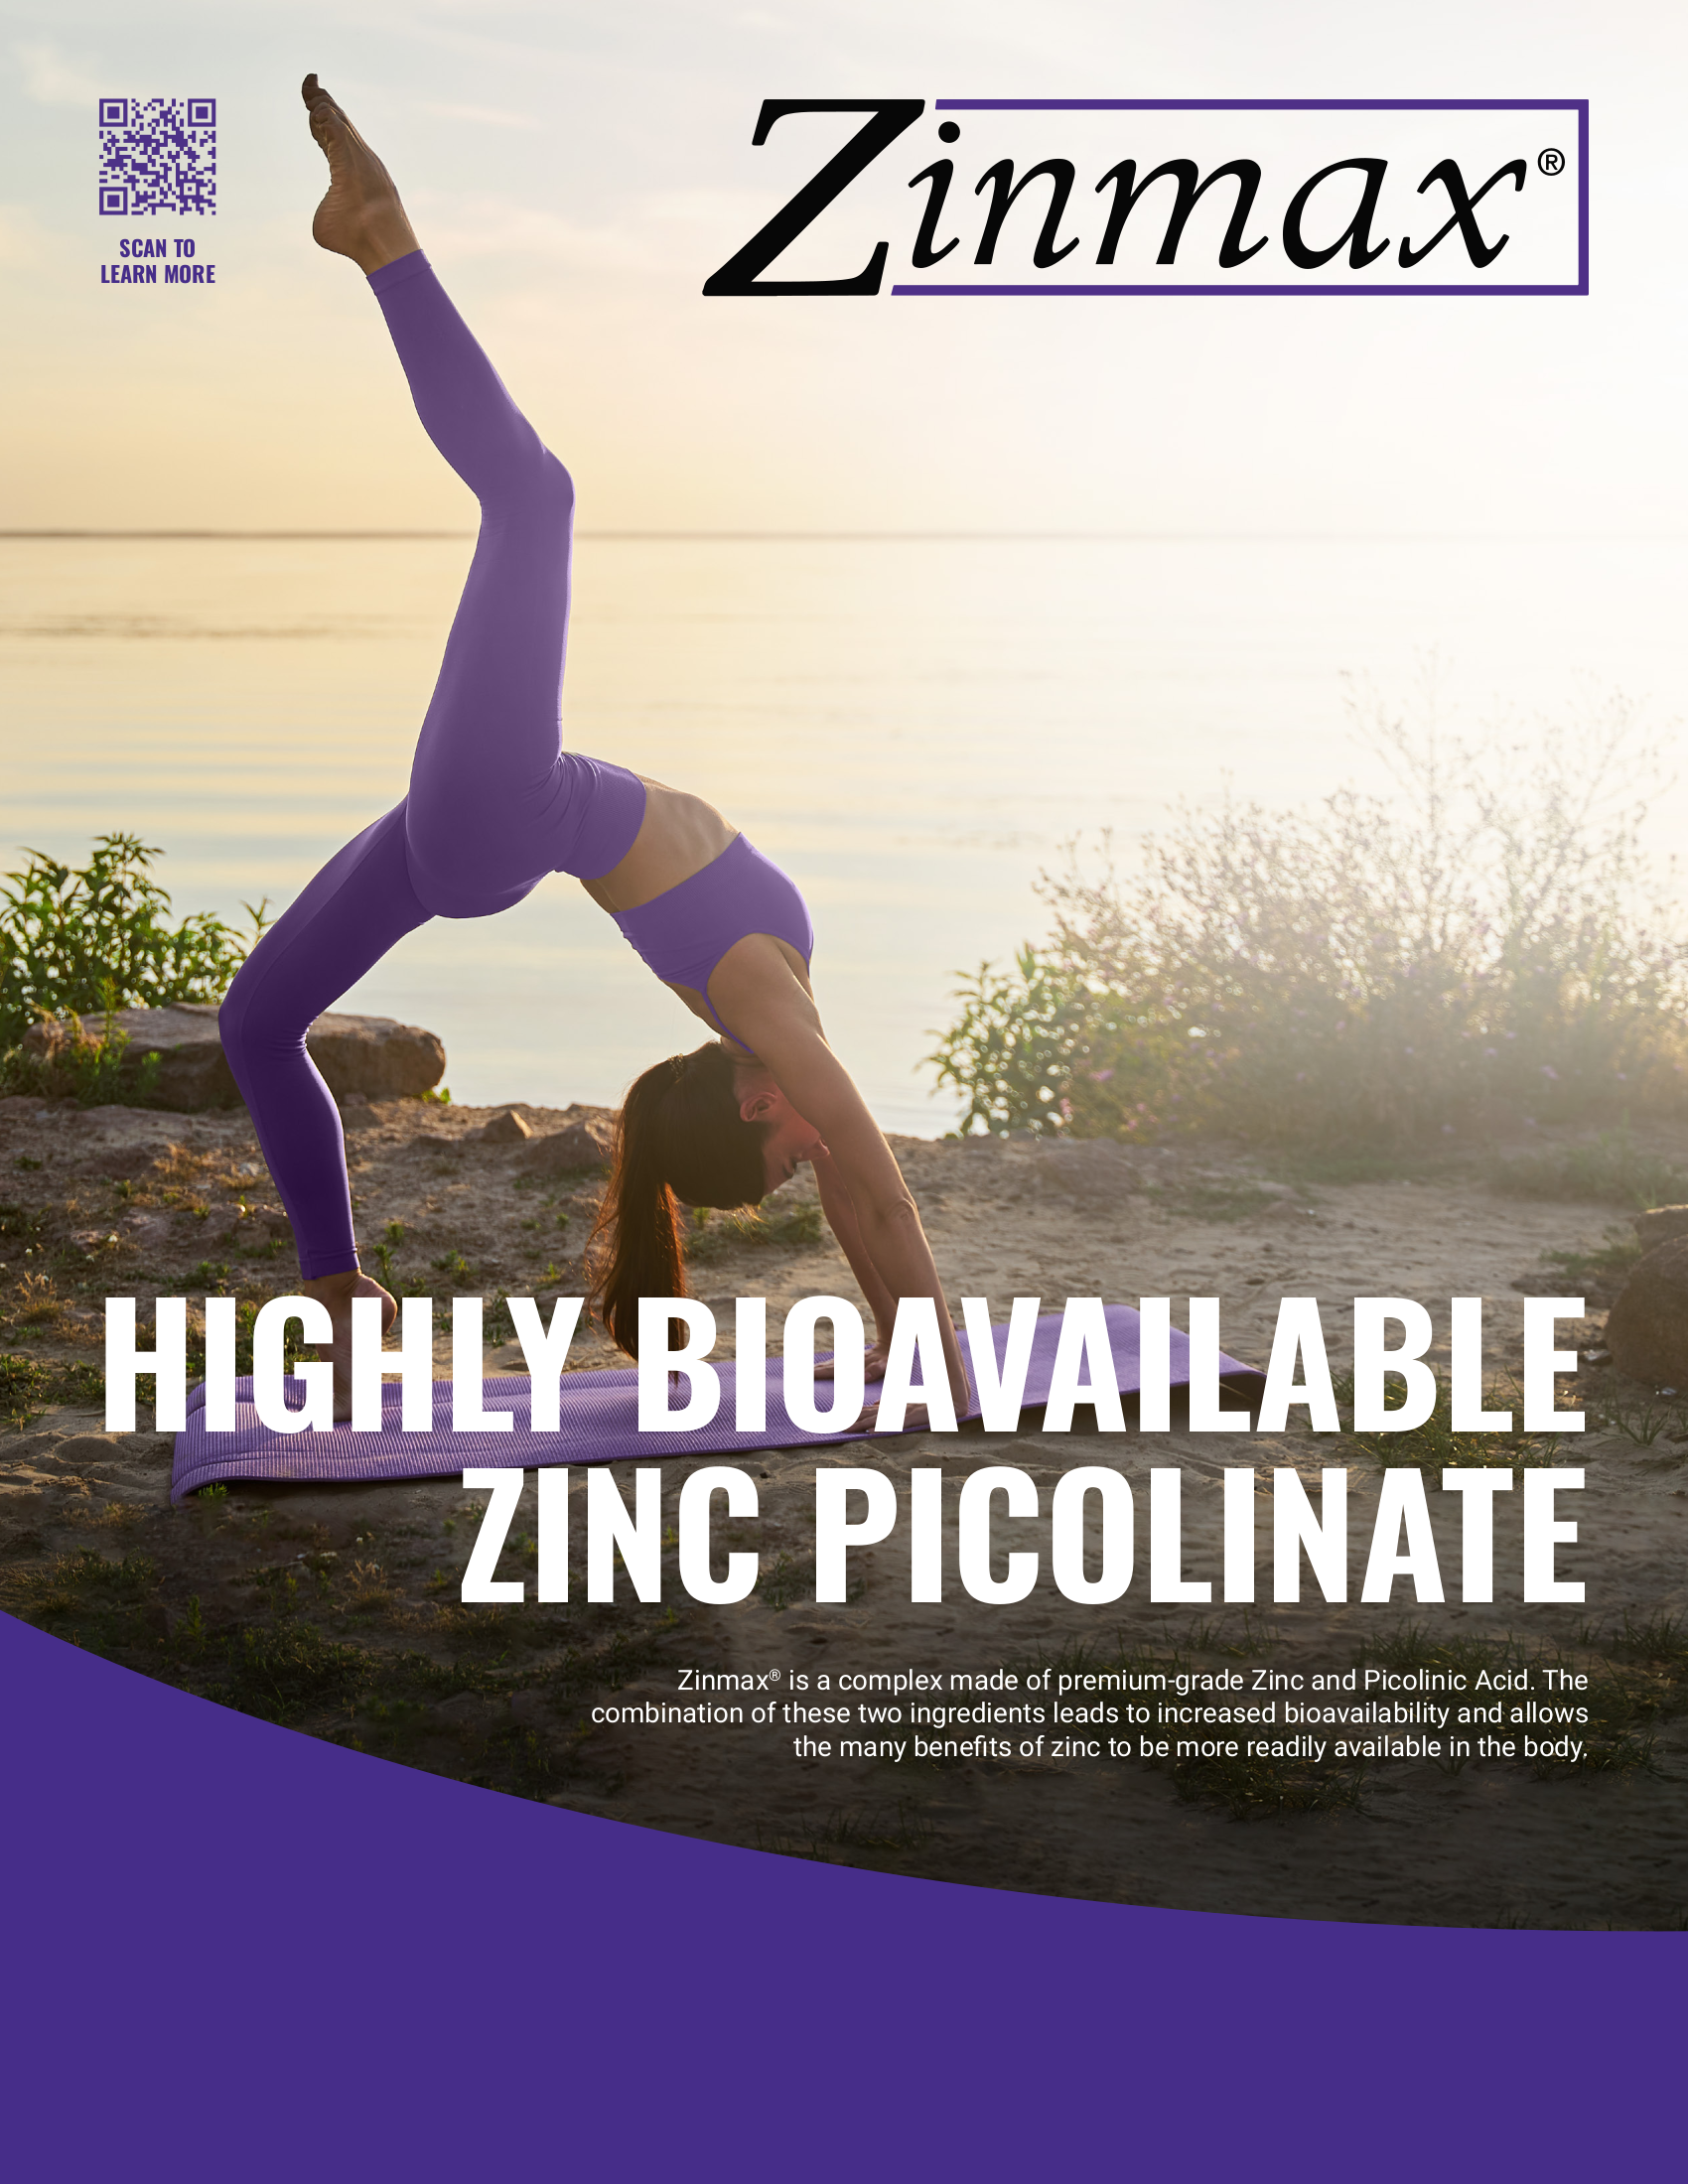 Zinmax Zinc Picolinate